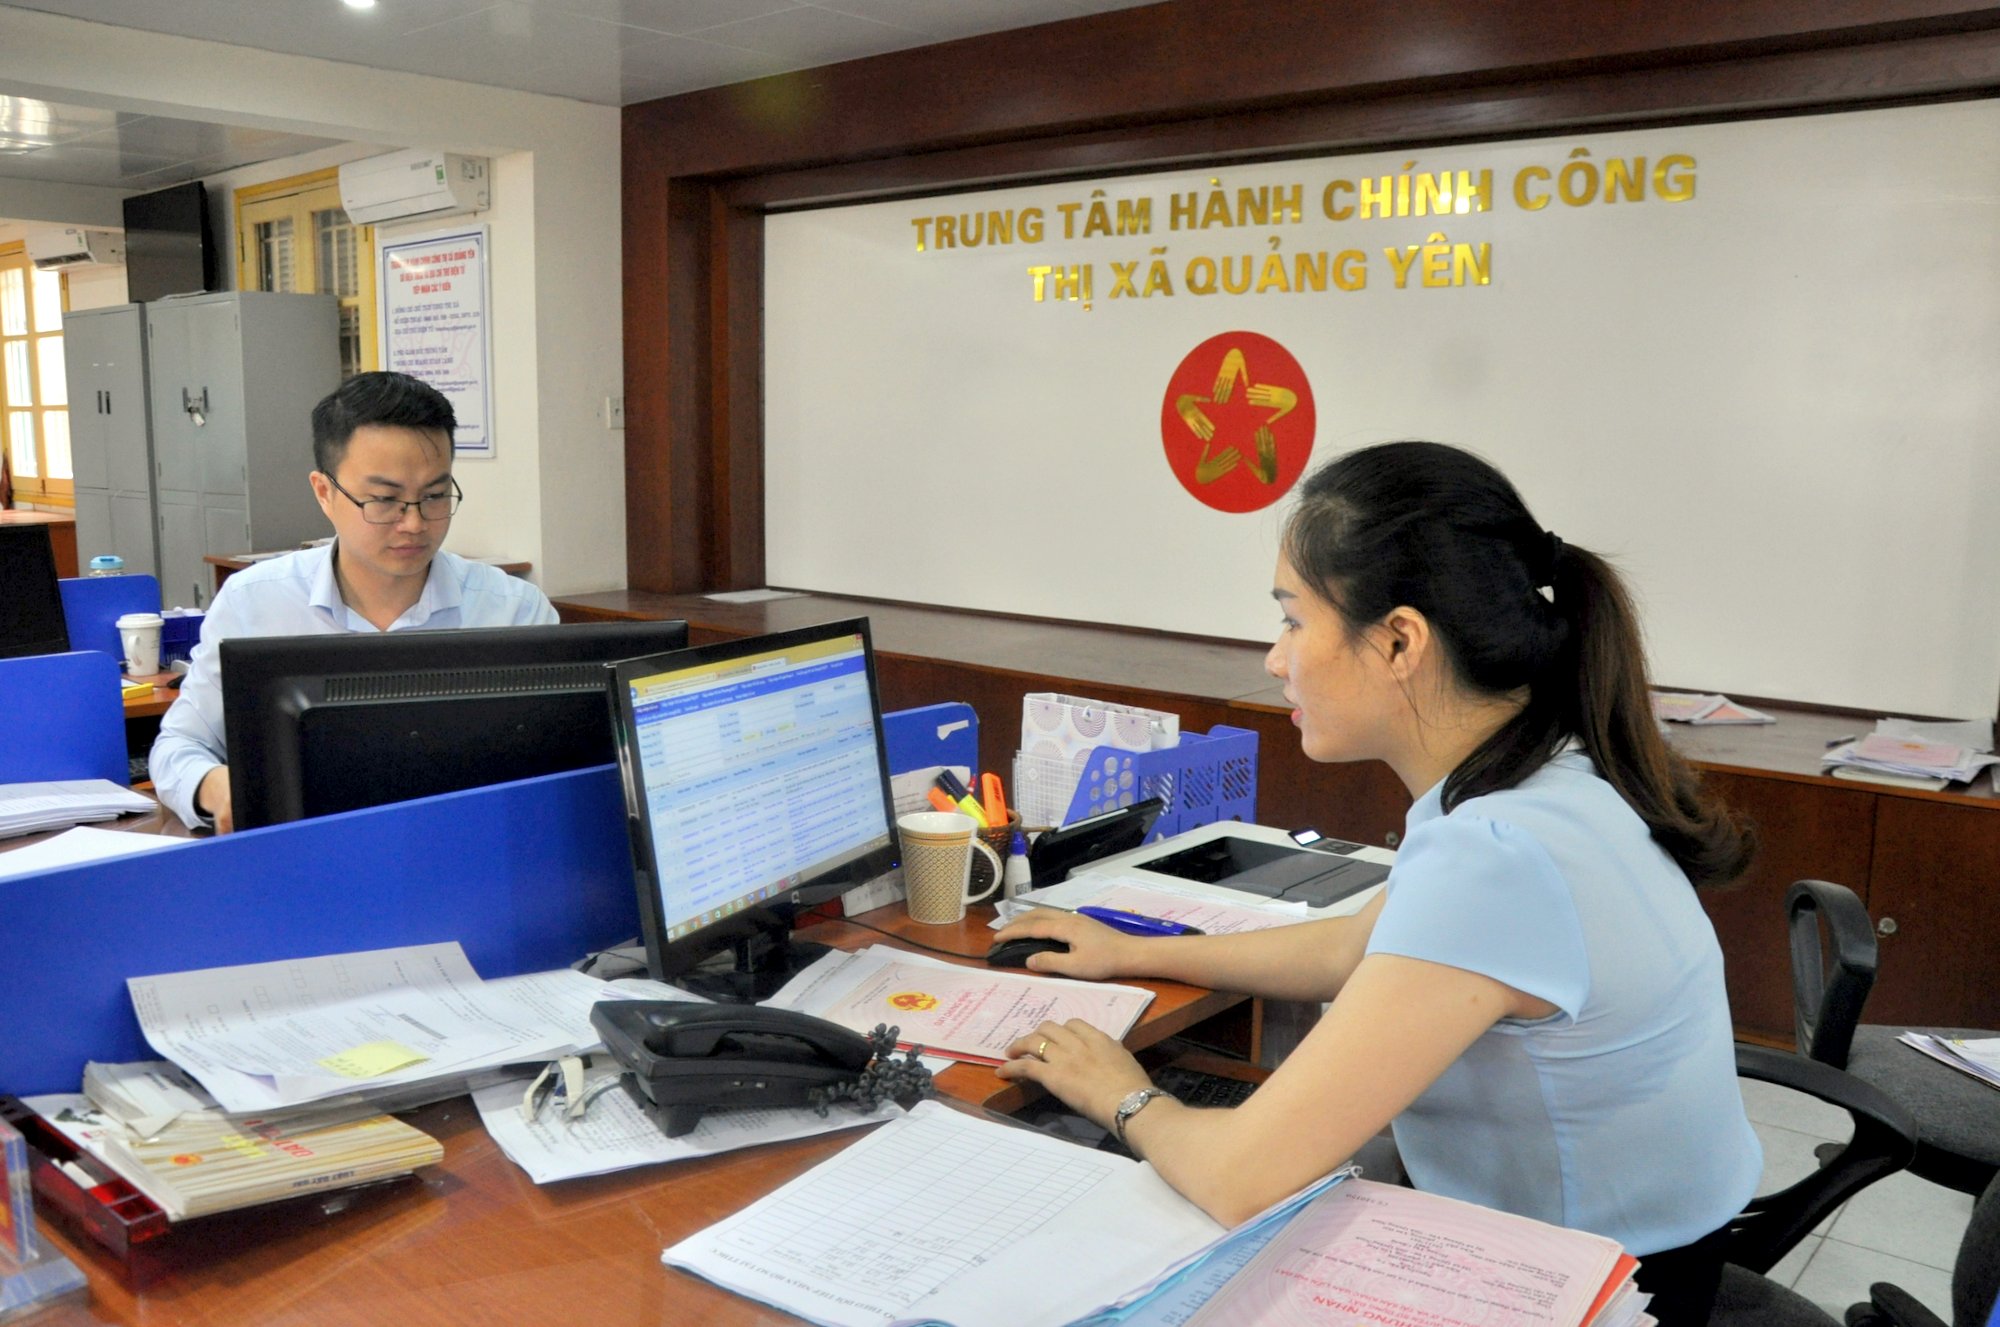 Cán bộ Trung tâm Hành chính công thị xã Quảng Yên thực hiện nhiệm vụ giải quyết thủ tục hành chính trên hệ thống dịch vụ công của tỉnh, ứng dụng HTQLCL TCVN 9001:2015.